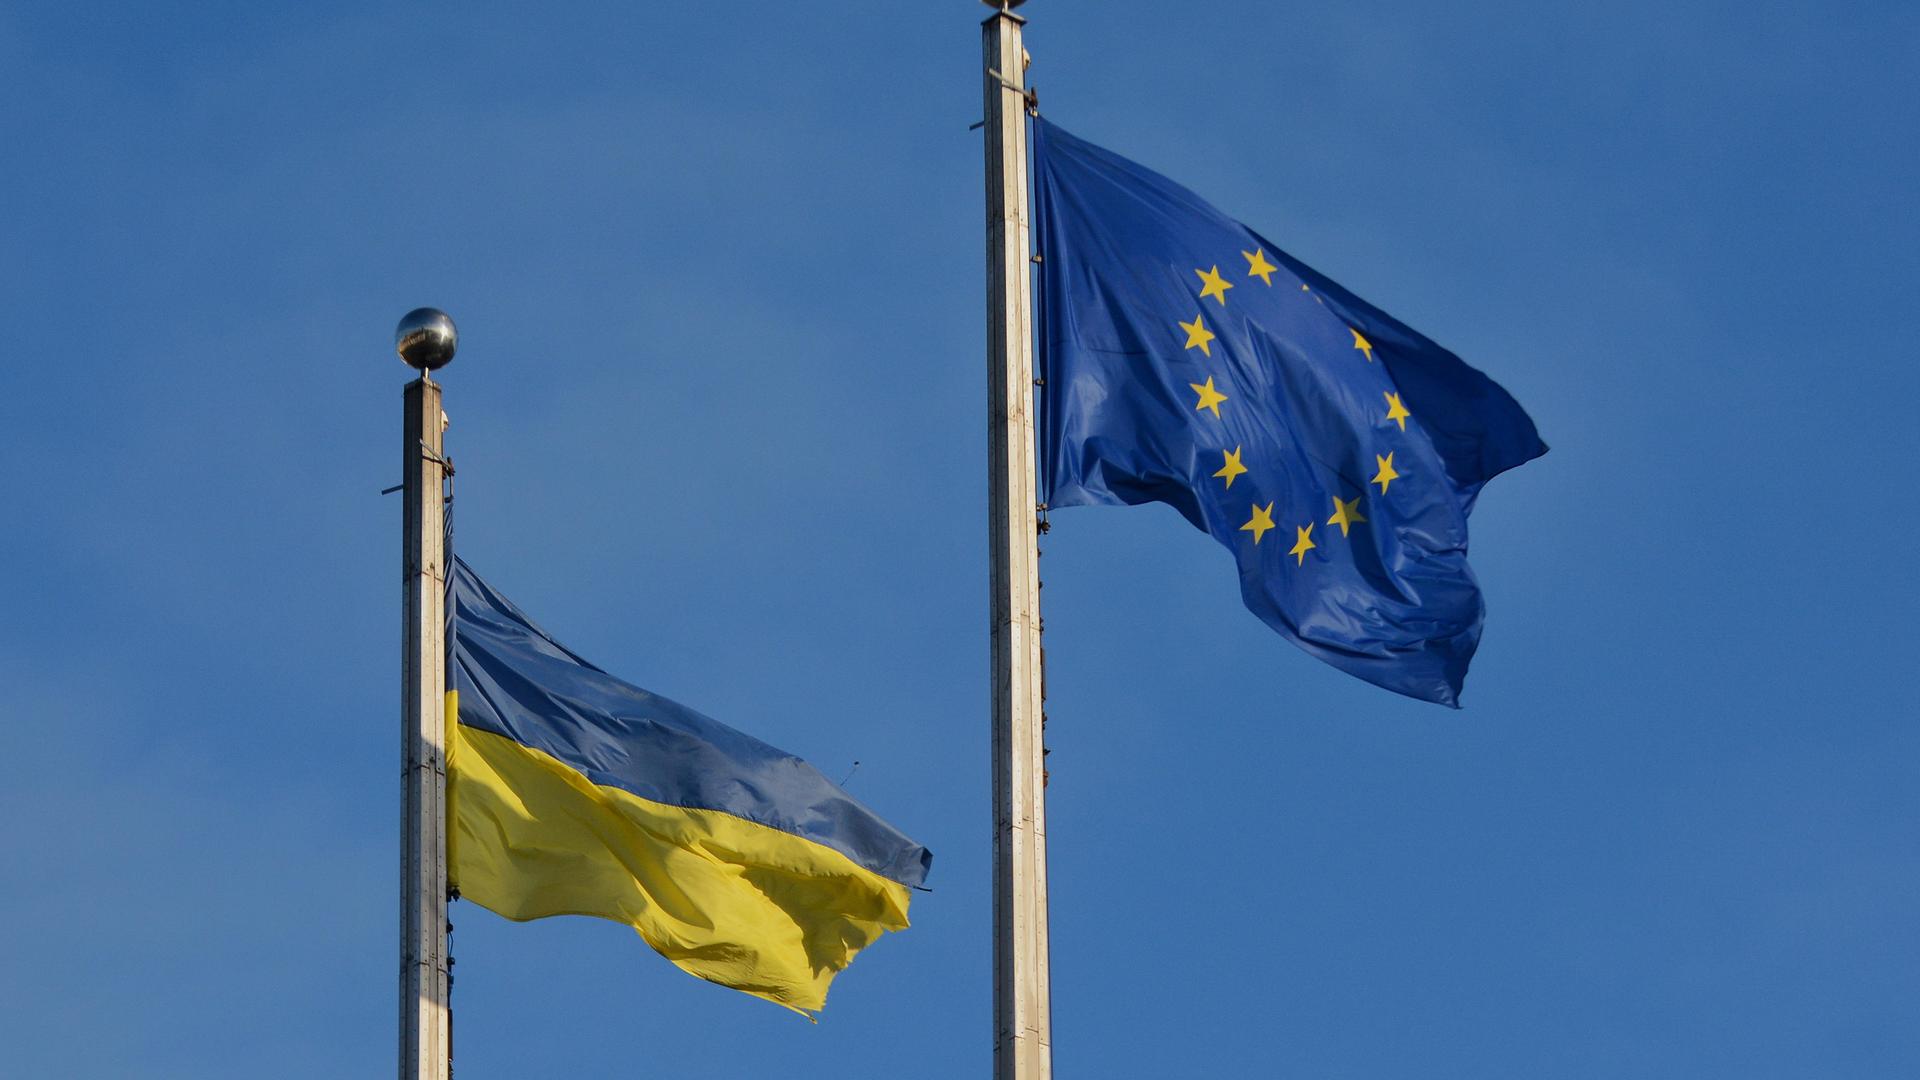 Die Flaggen der EU und der Ukraine wehen vor einem blauen Himmel.